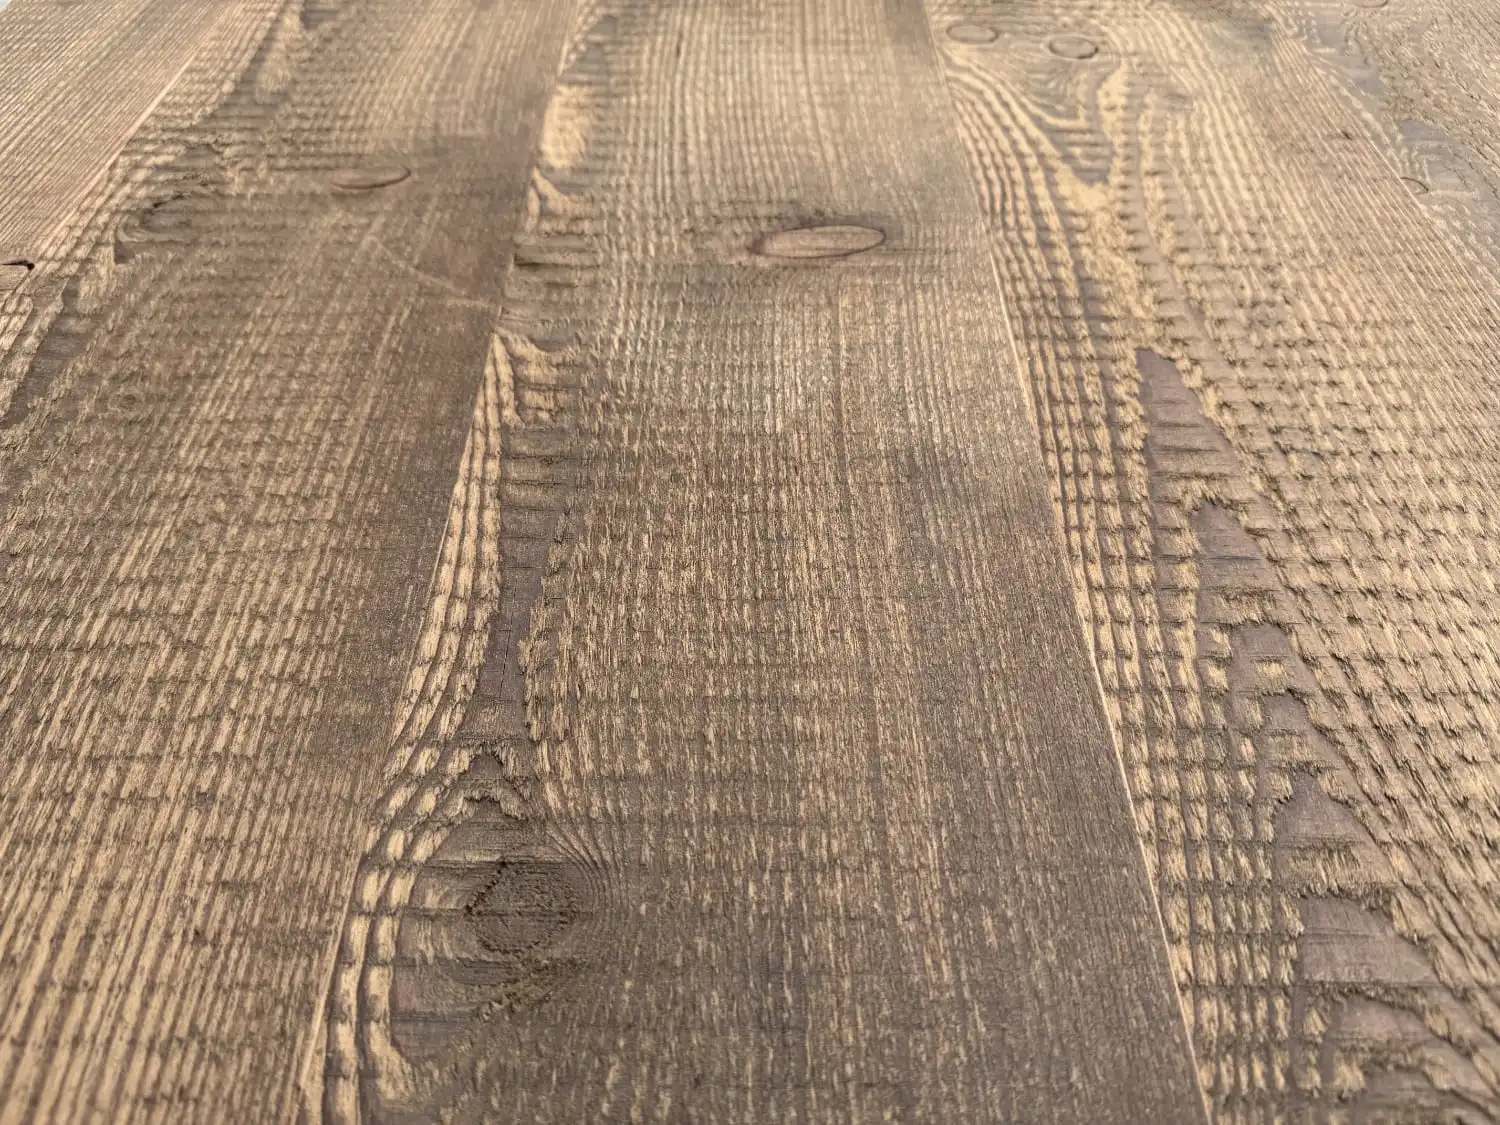 Gros plan d'une surface en bois texturée avec des motifs de grain visibles et des imperfections naturelles. Le bois, qui rappelle le parquet ancien, présente un aspect patiné et rustique proche du sapin vieilli.